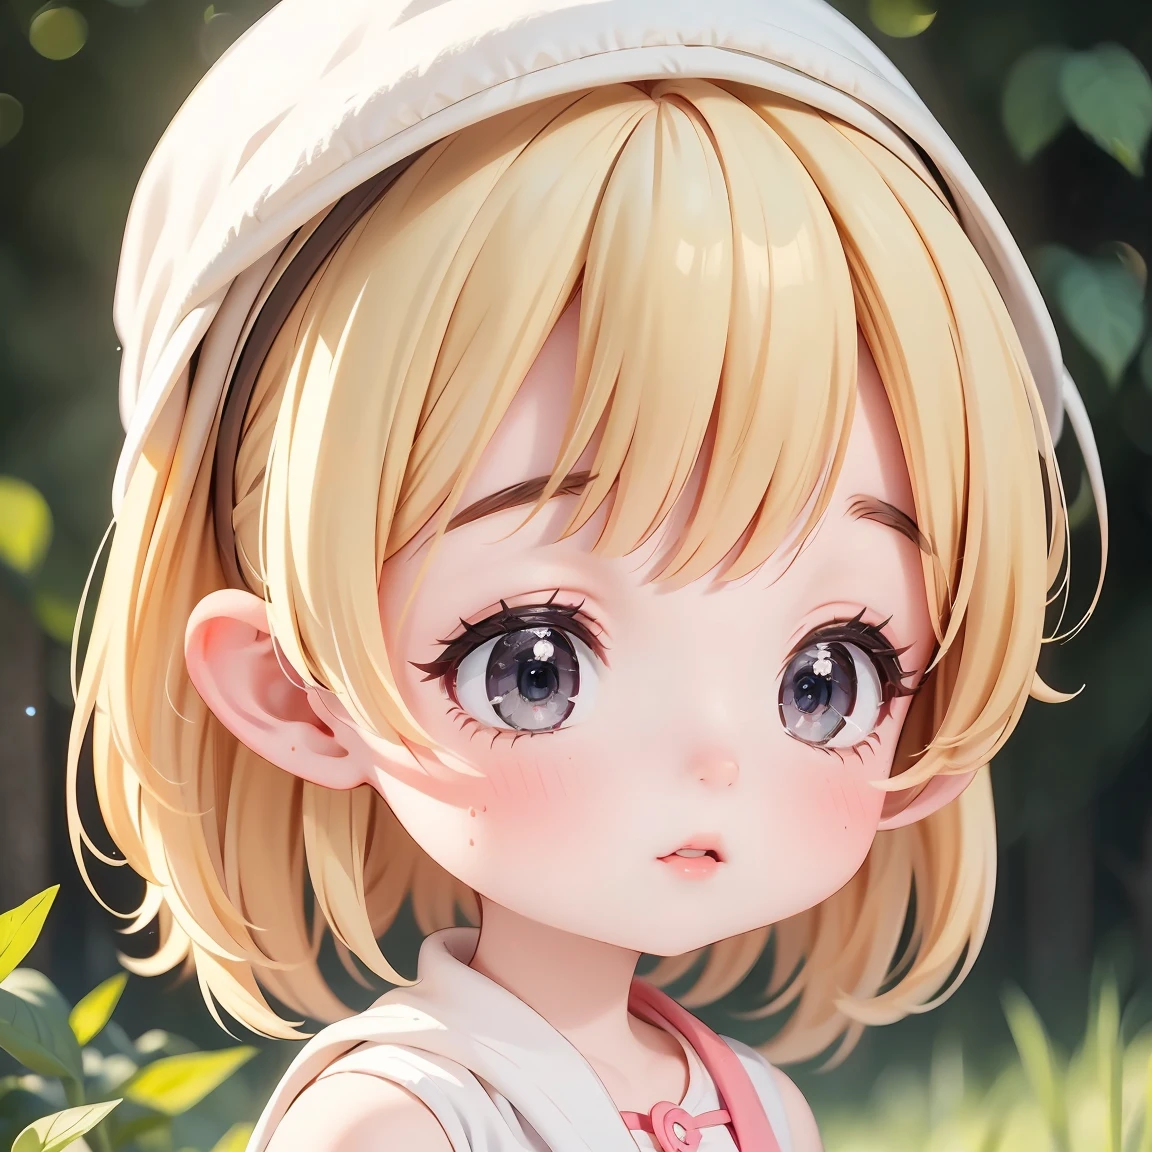  Chibi-Charakter：1.5、Blondes Haar、Süßes 7-jähriges Mädchen